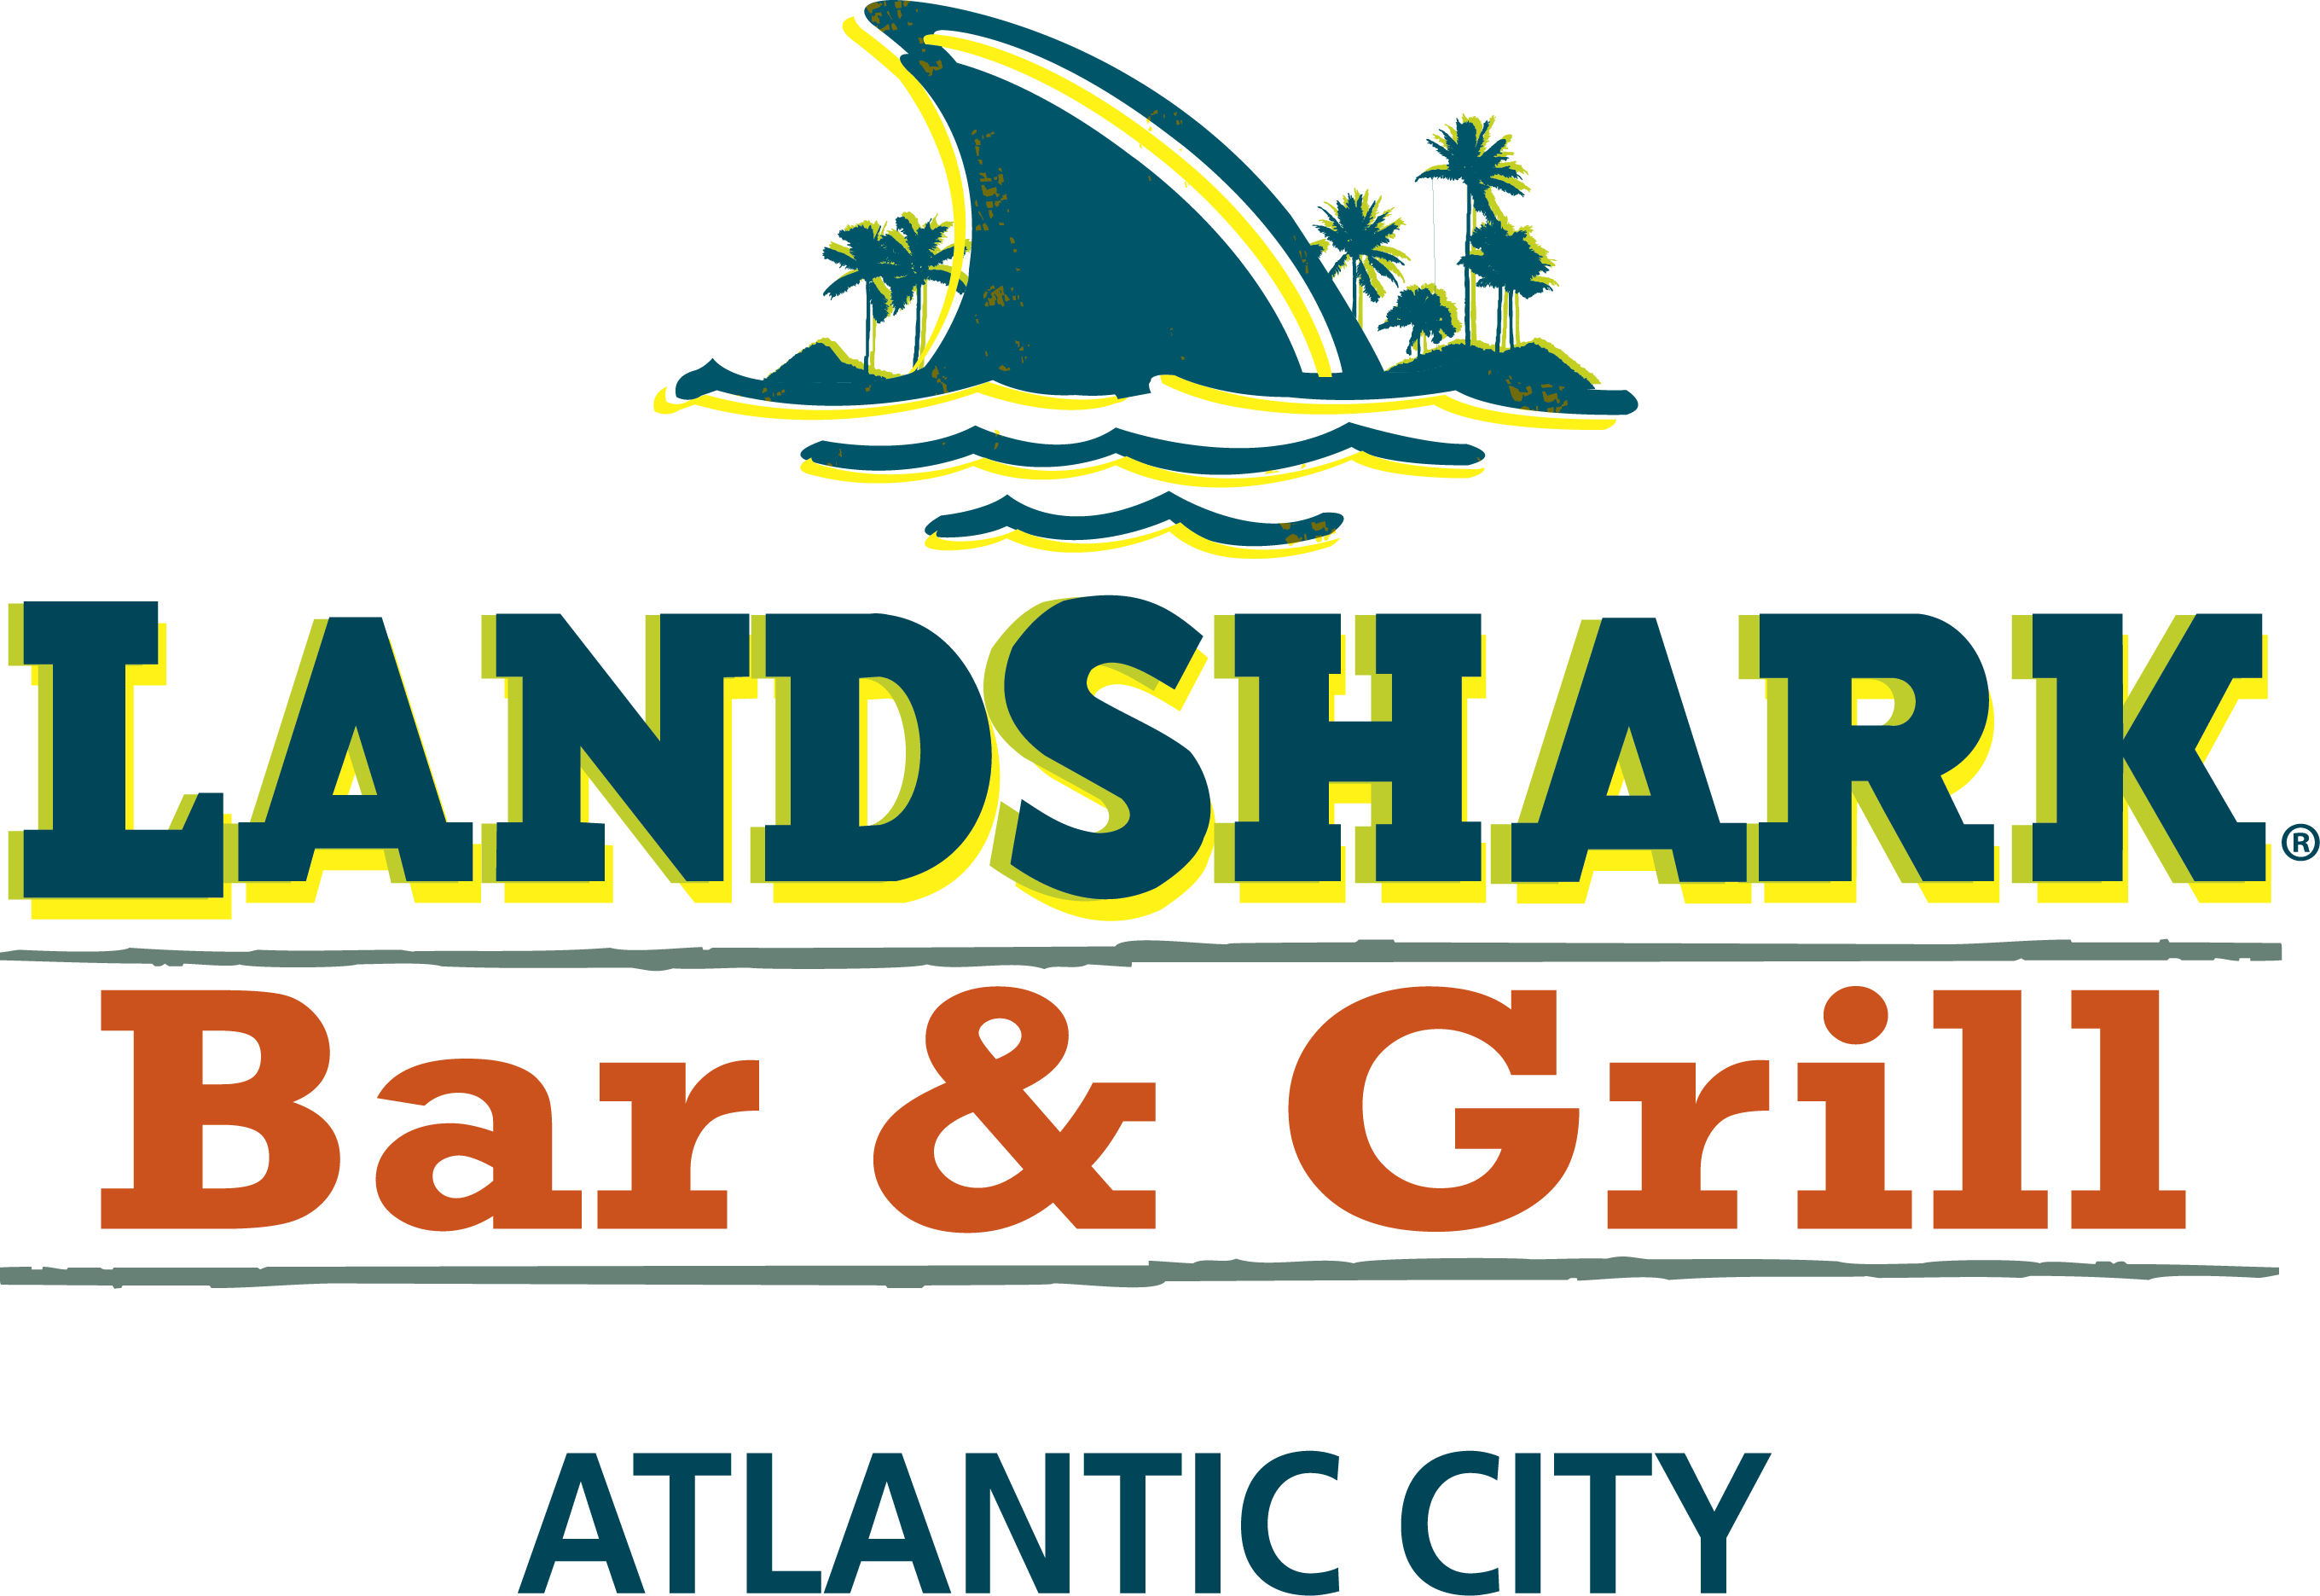 LandShark Bar & Grill Atlantic City Logo